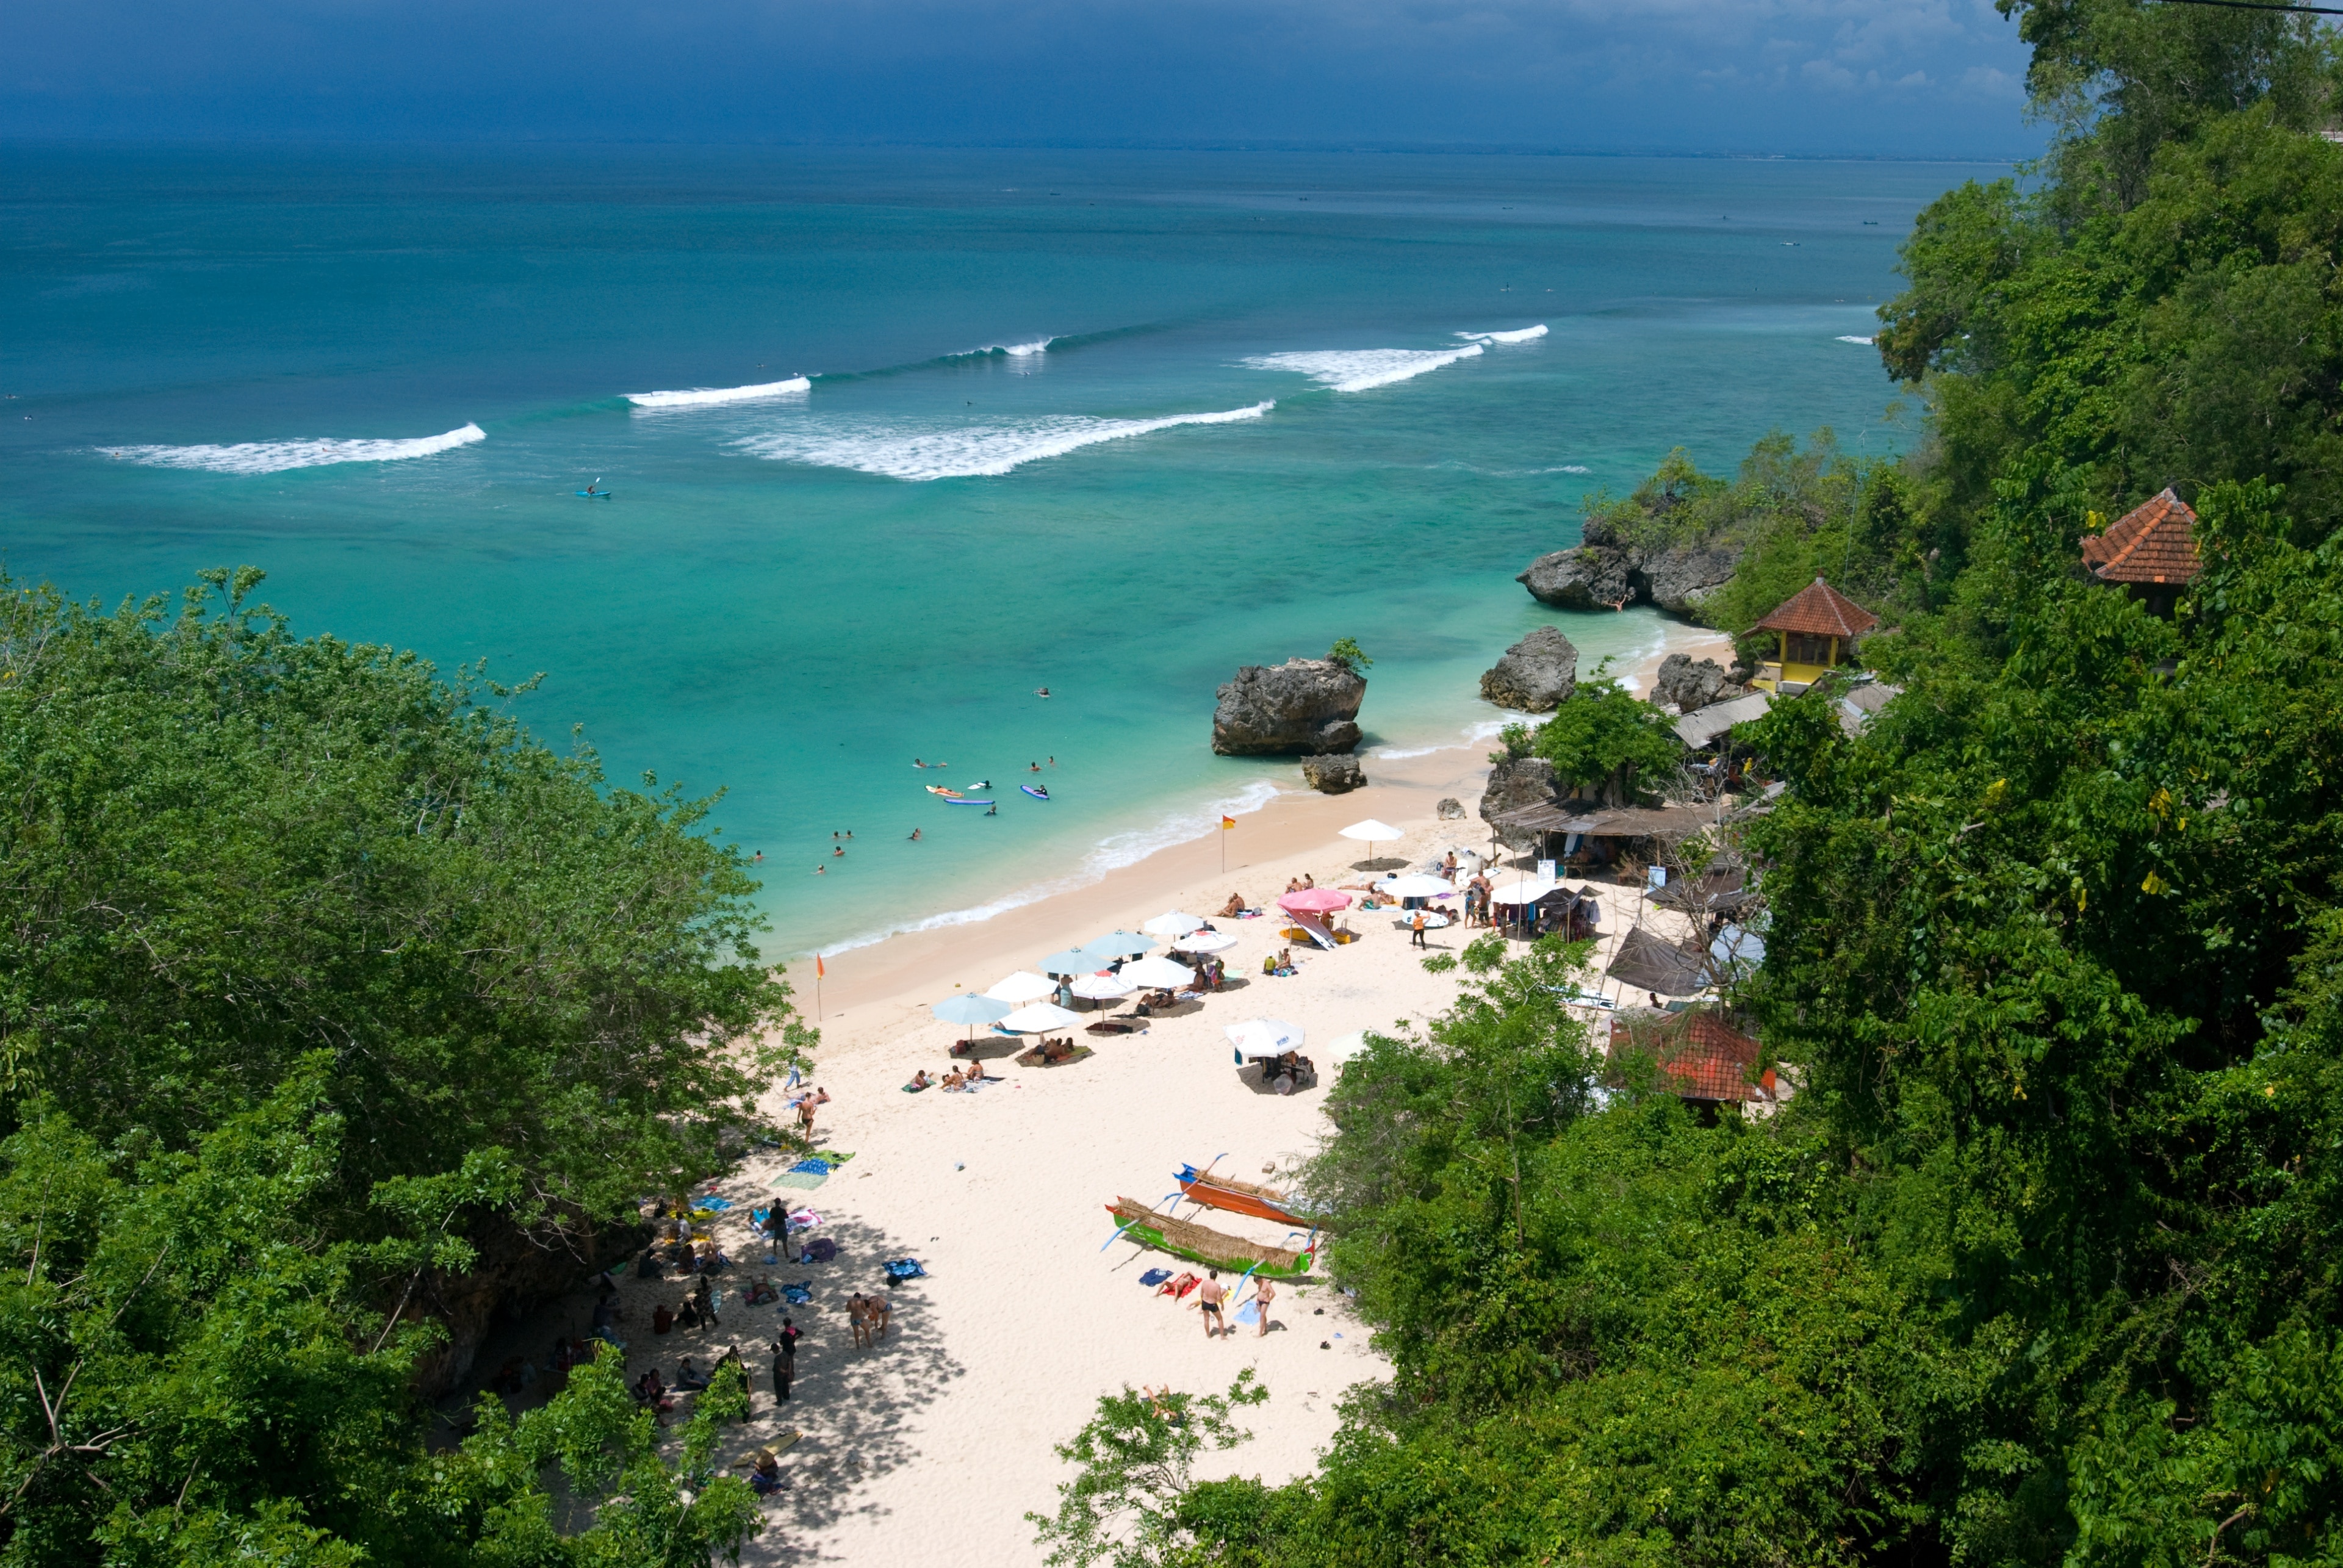 Padang Padang Beach, Pecatu, Bali, Indonesia